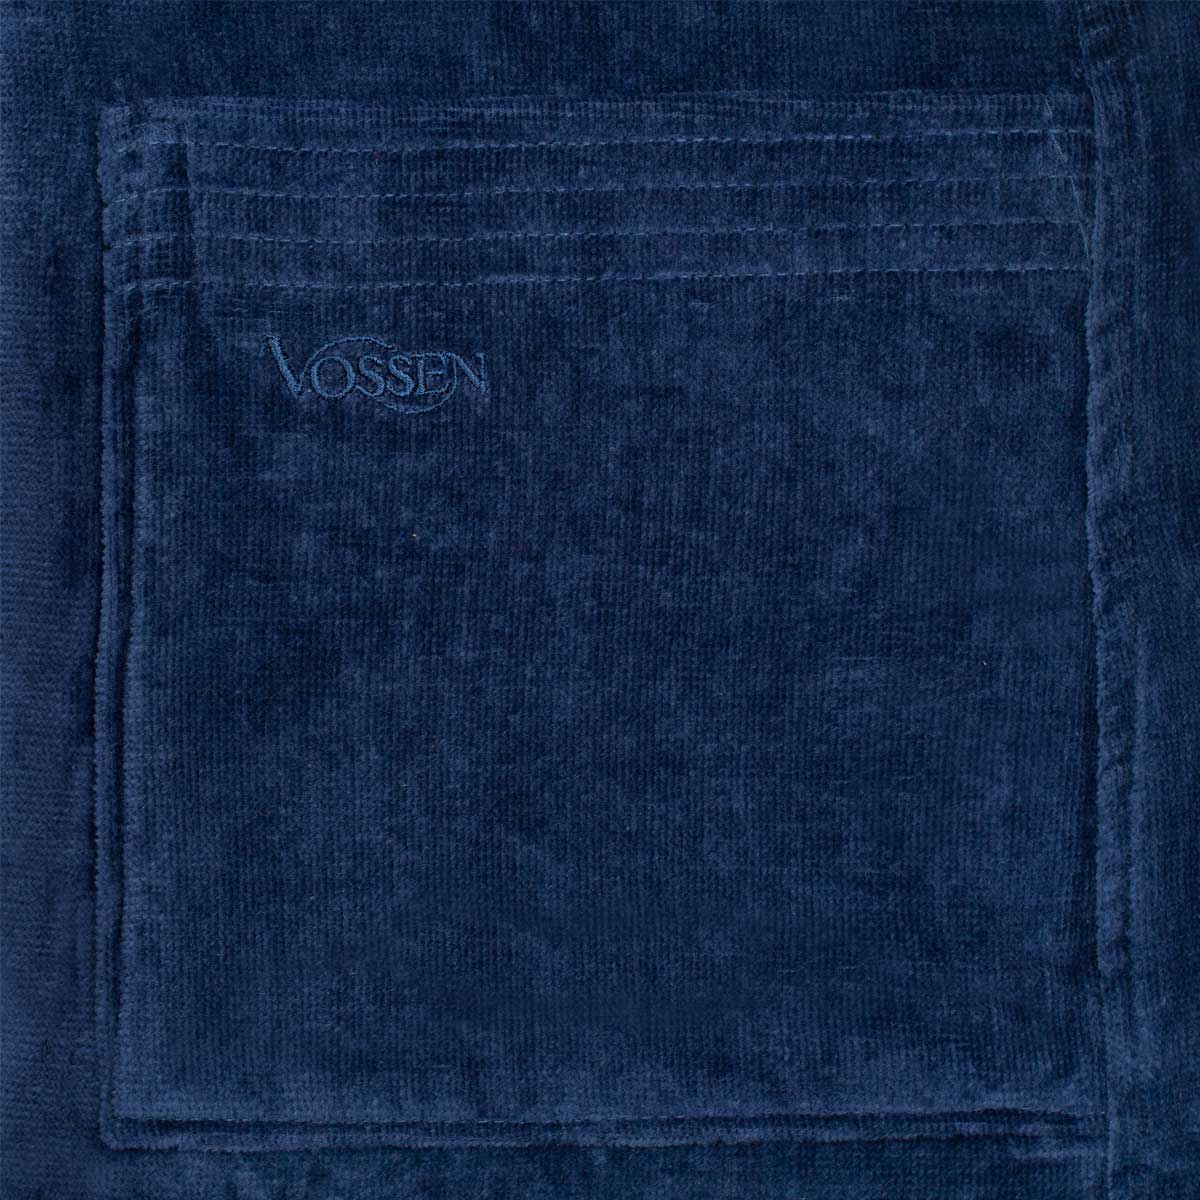 Халат махровый Vossen Texas размер M, темно-синий Vossen 7990 05112 4760 4248 M - фото 4